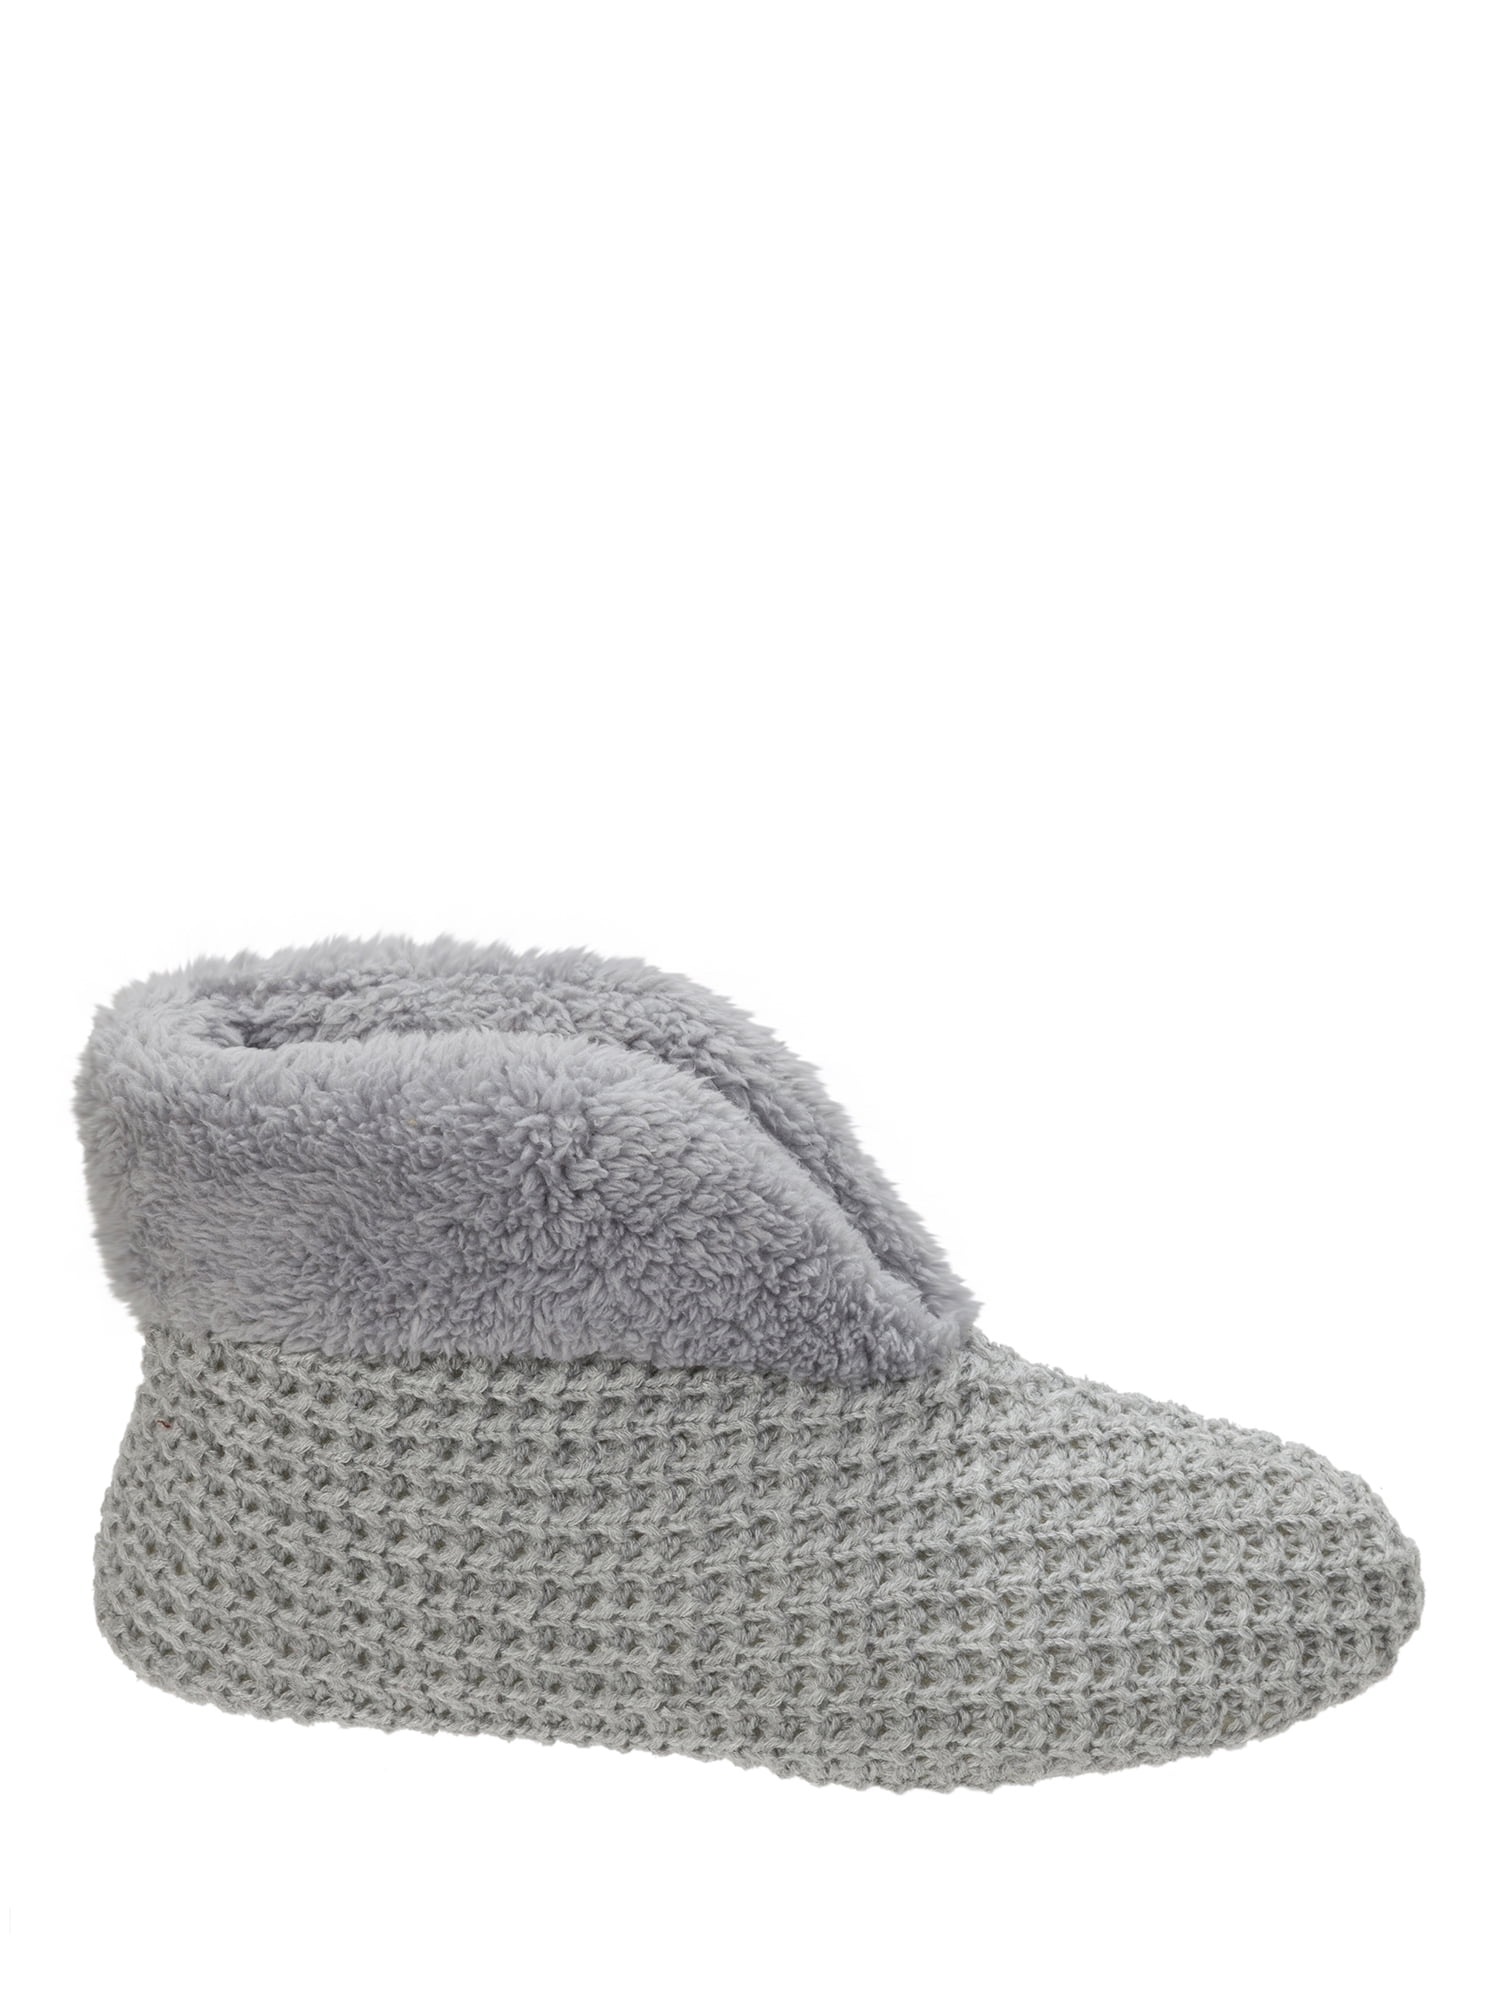 dearfoam slippers for women